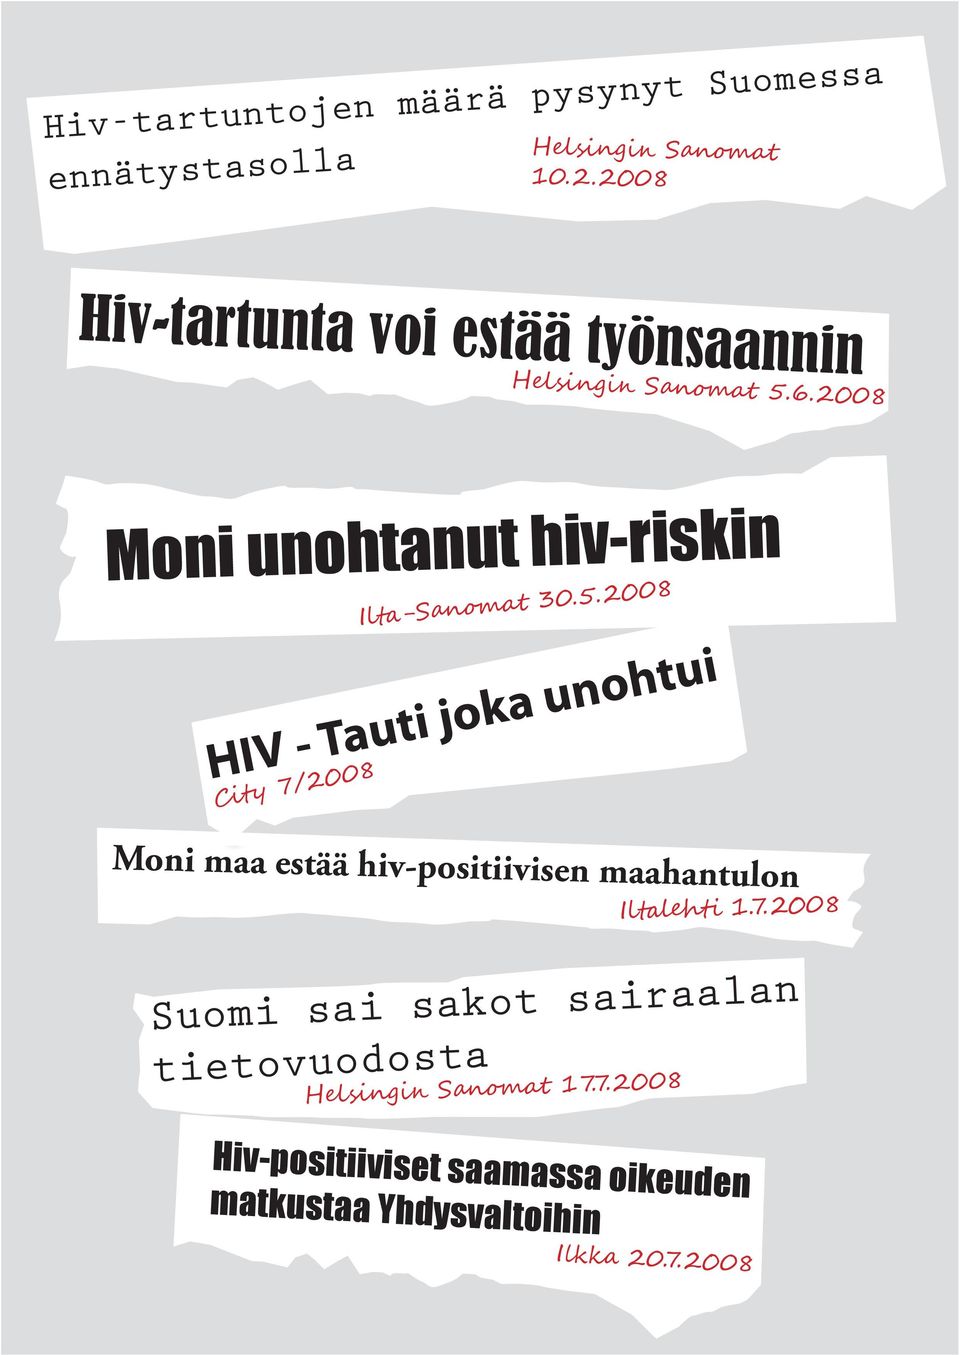 5.2008 HIV - Tauti joka unohtui City 7/2008 Moni maa estää hiv-positiivisen maahantulon Iltalehti 1.7.2008 Suomi sai sakot sairaalan tietovuodosta Helsingin Sanomat 17.